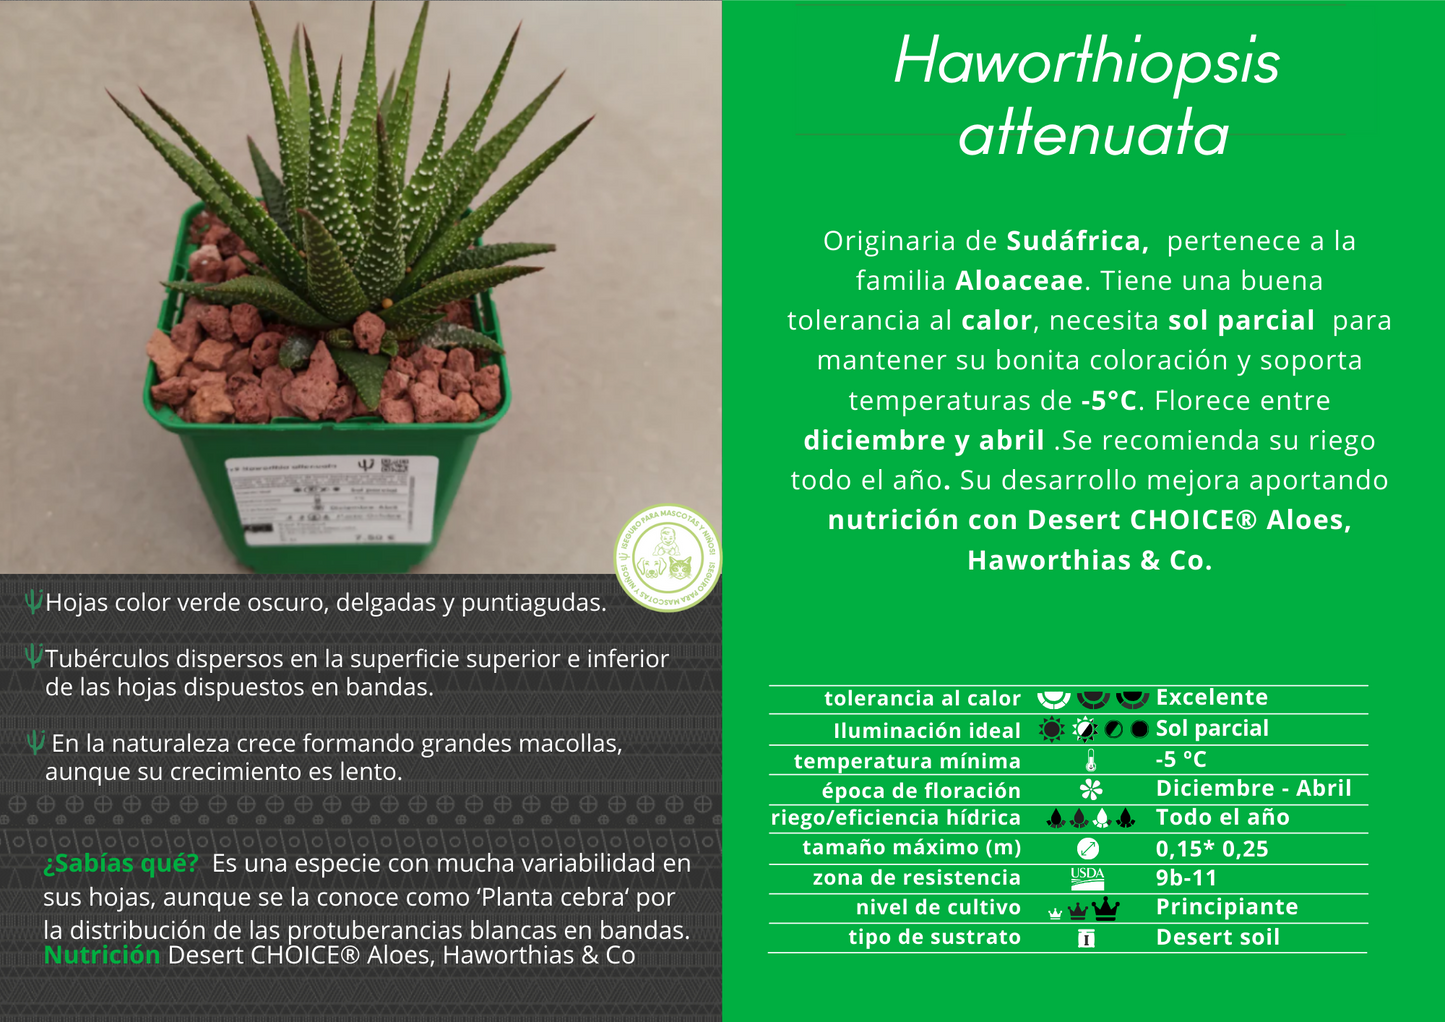 Haworthiopsis attenuata